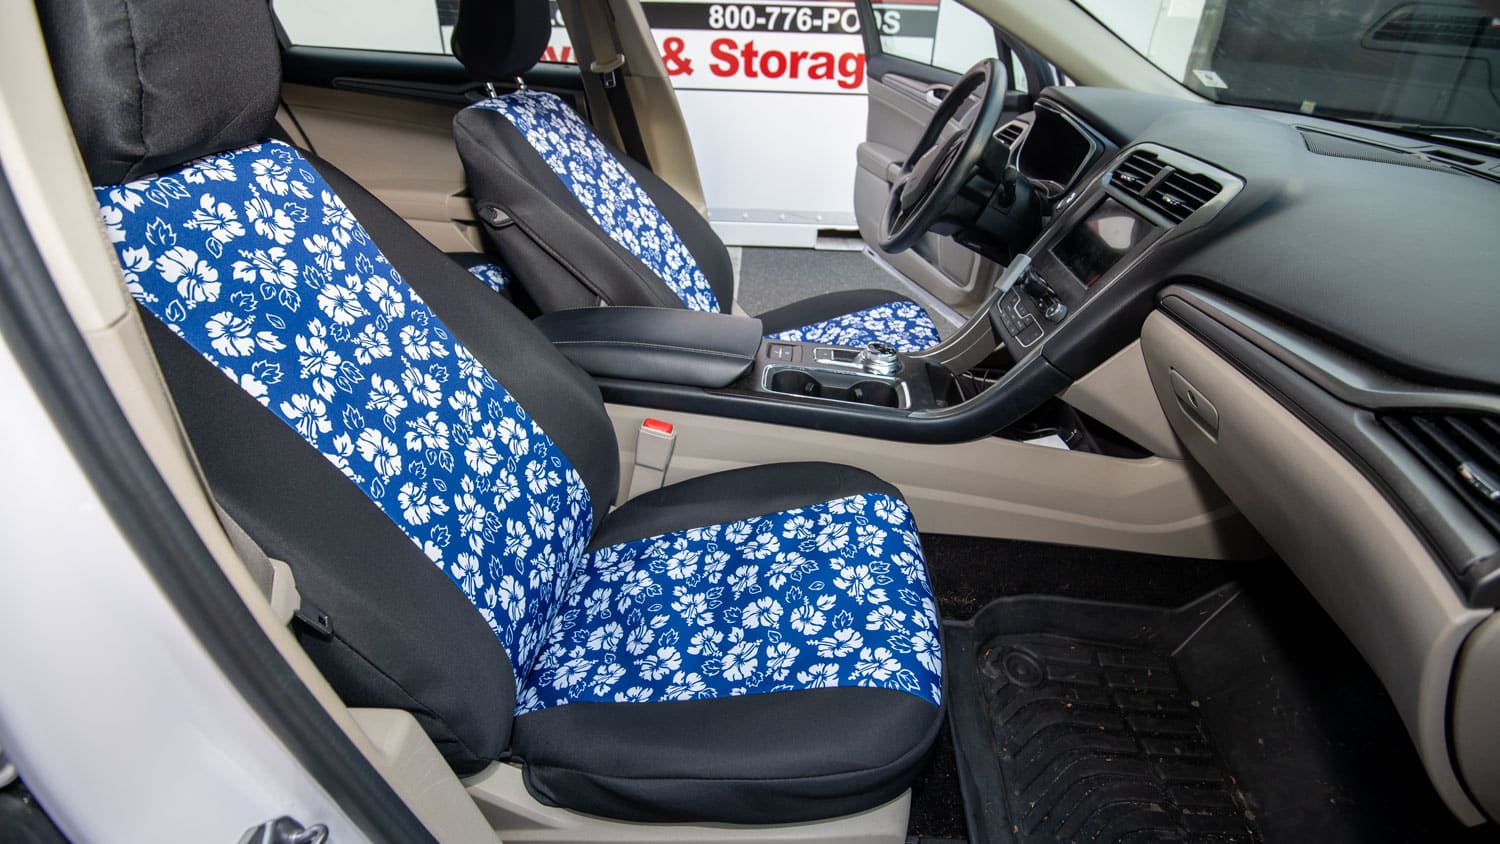 CalTrend NeoSupreme Seat Cover